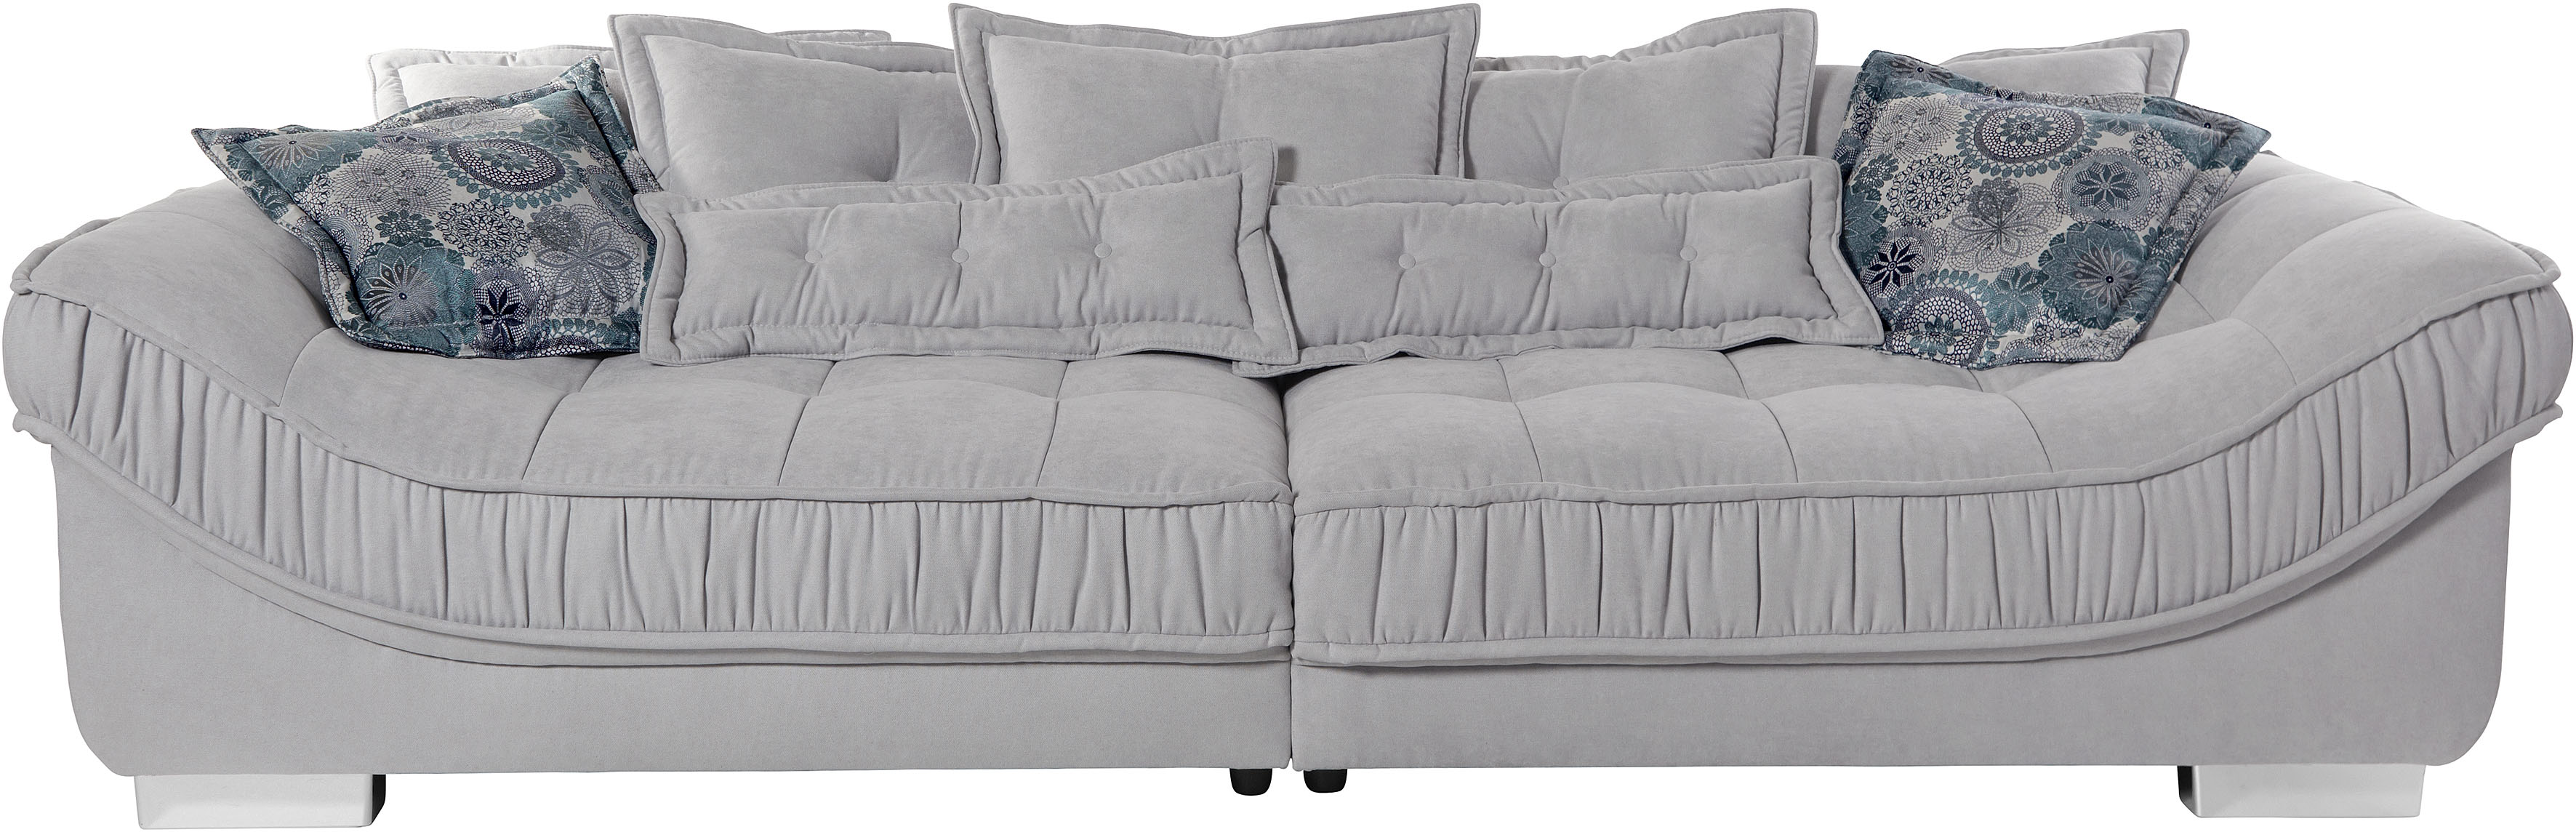 Leonique Big-Sofa "Diwan Luxus", hochwertige Polsterung für bis zu 140 kg Belastbarkeit pro Sitzfläche